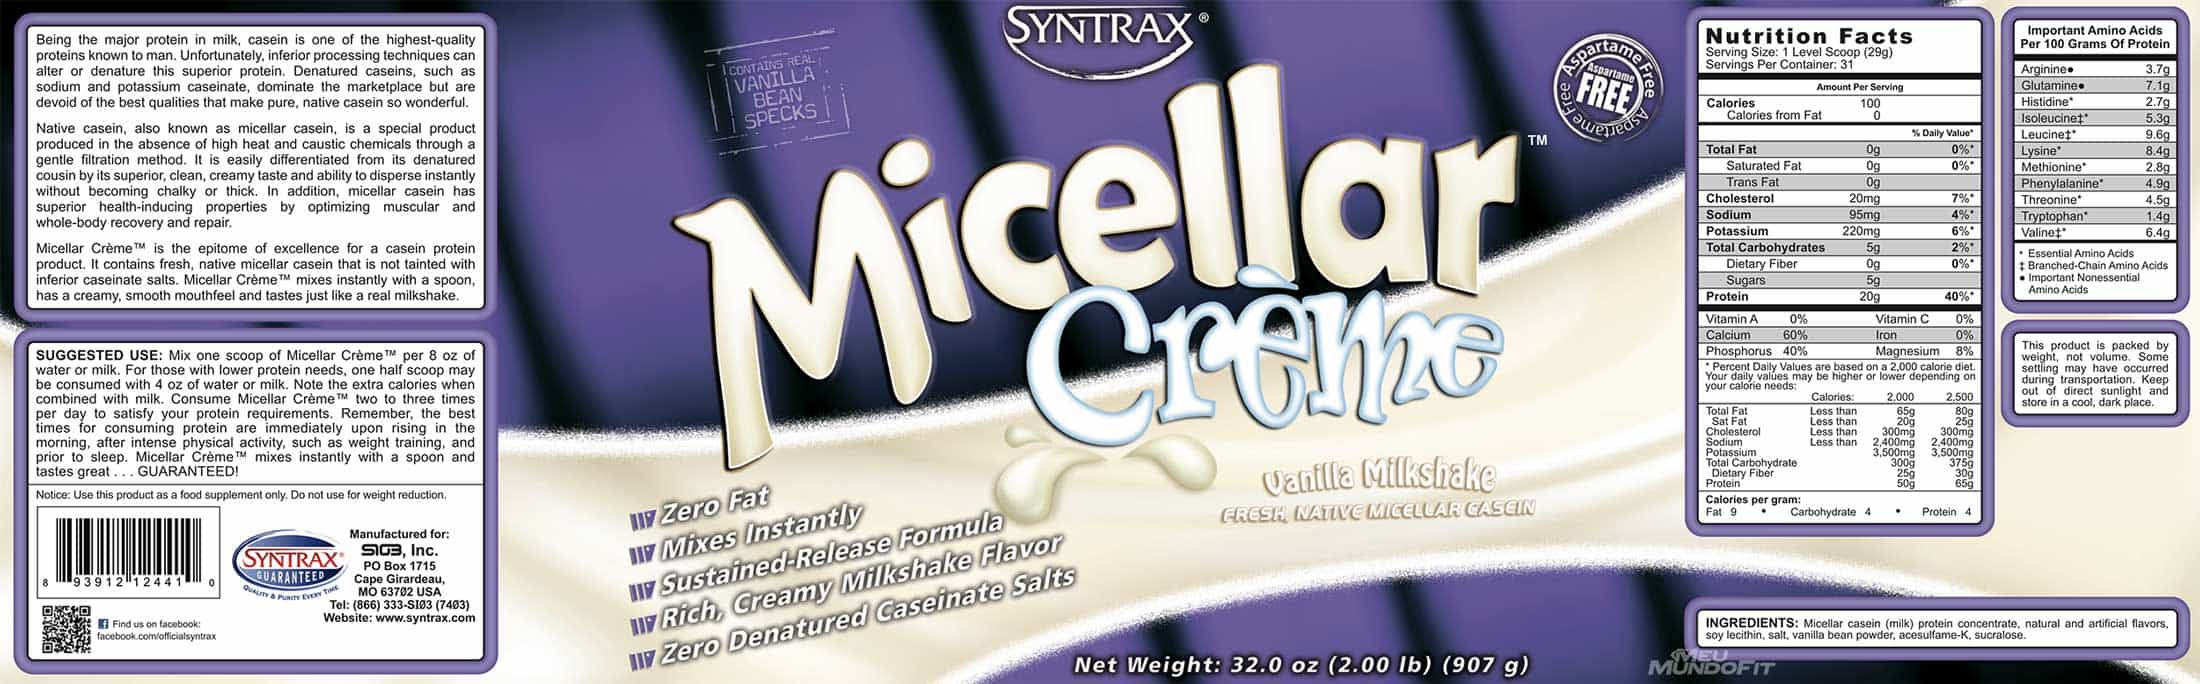 Rótulo Micellar Crème Syntrax